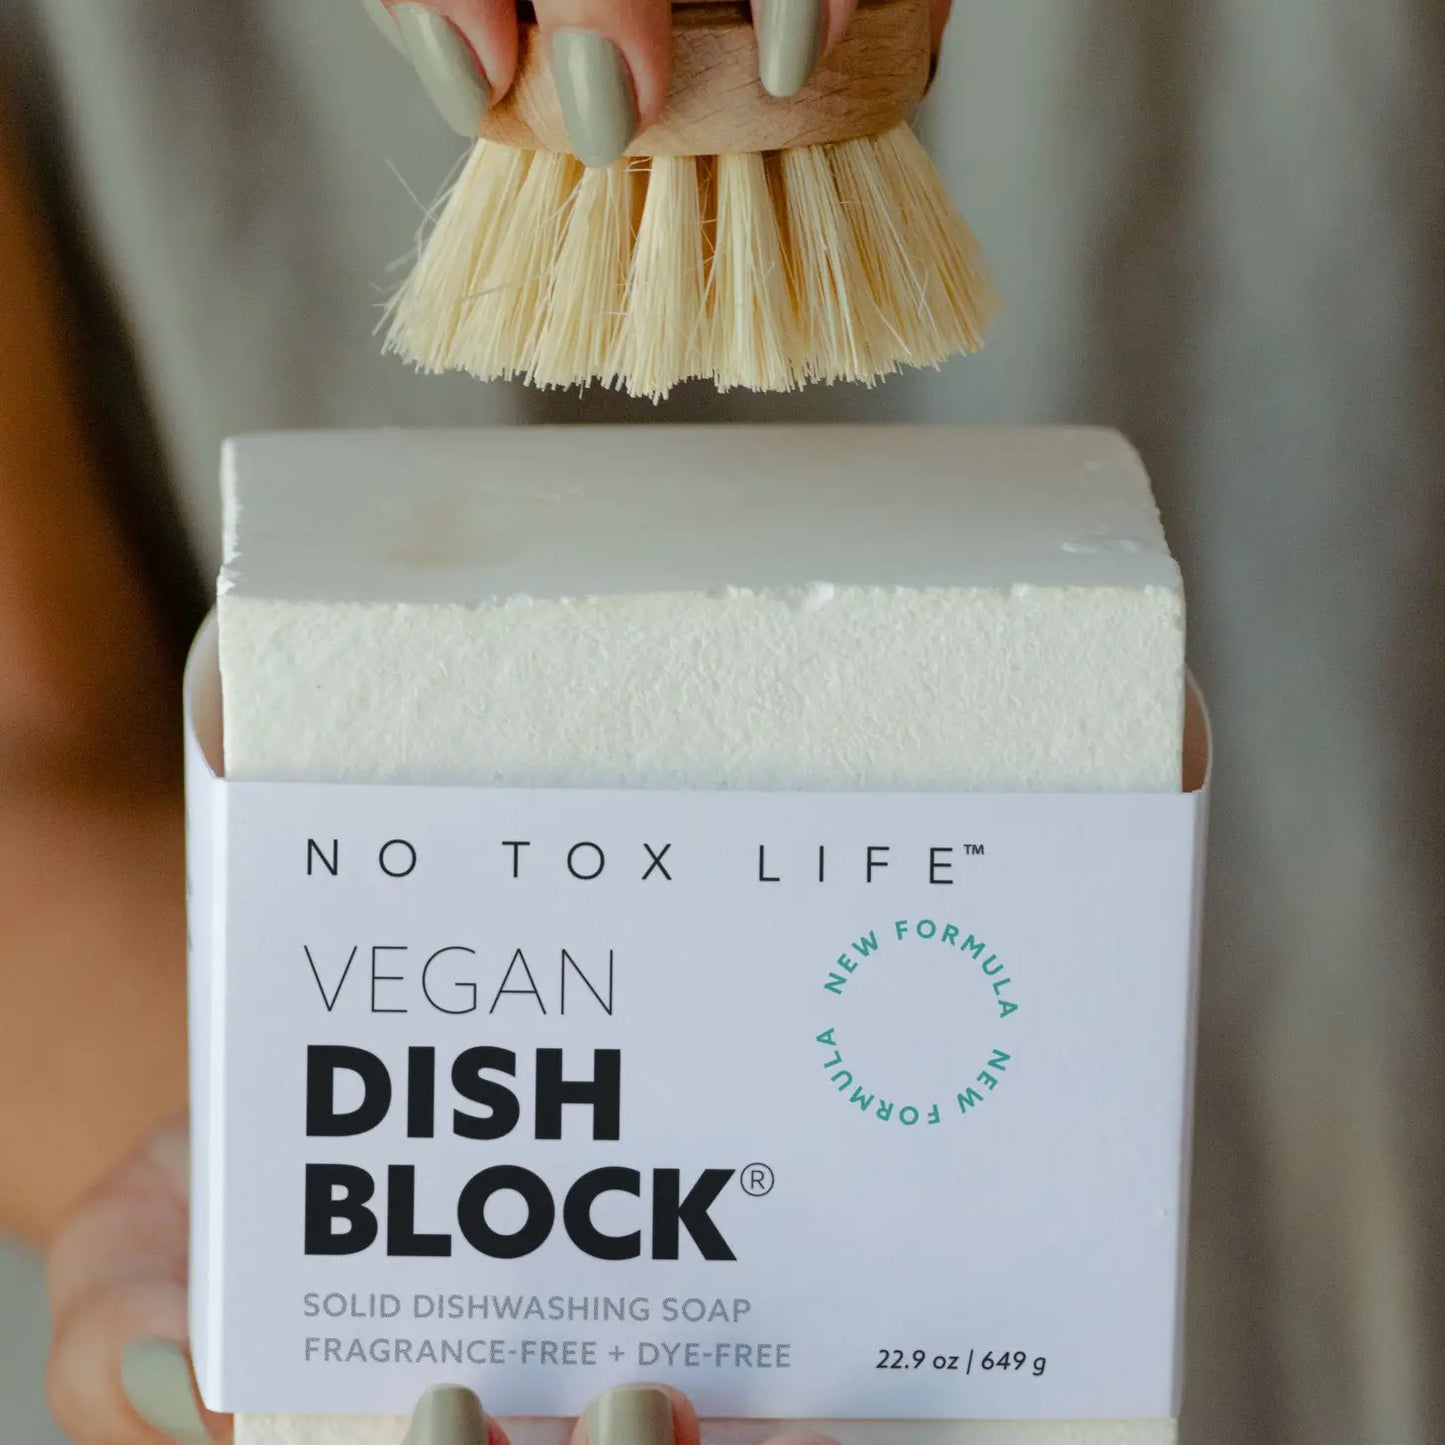 Dish Soap Block